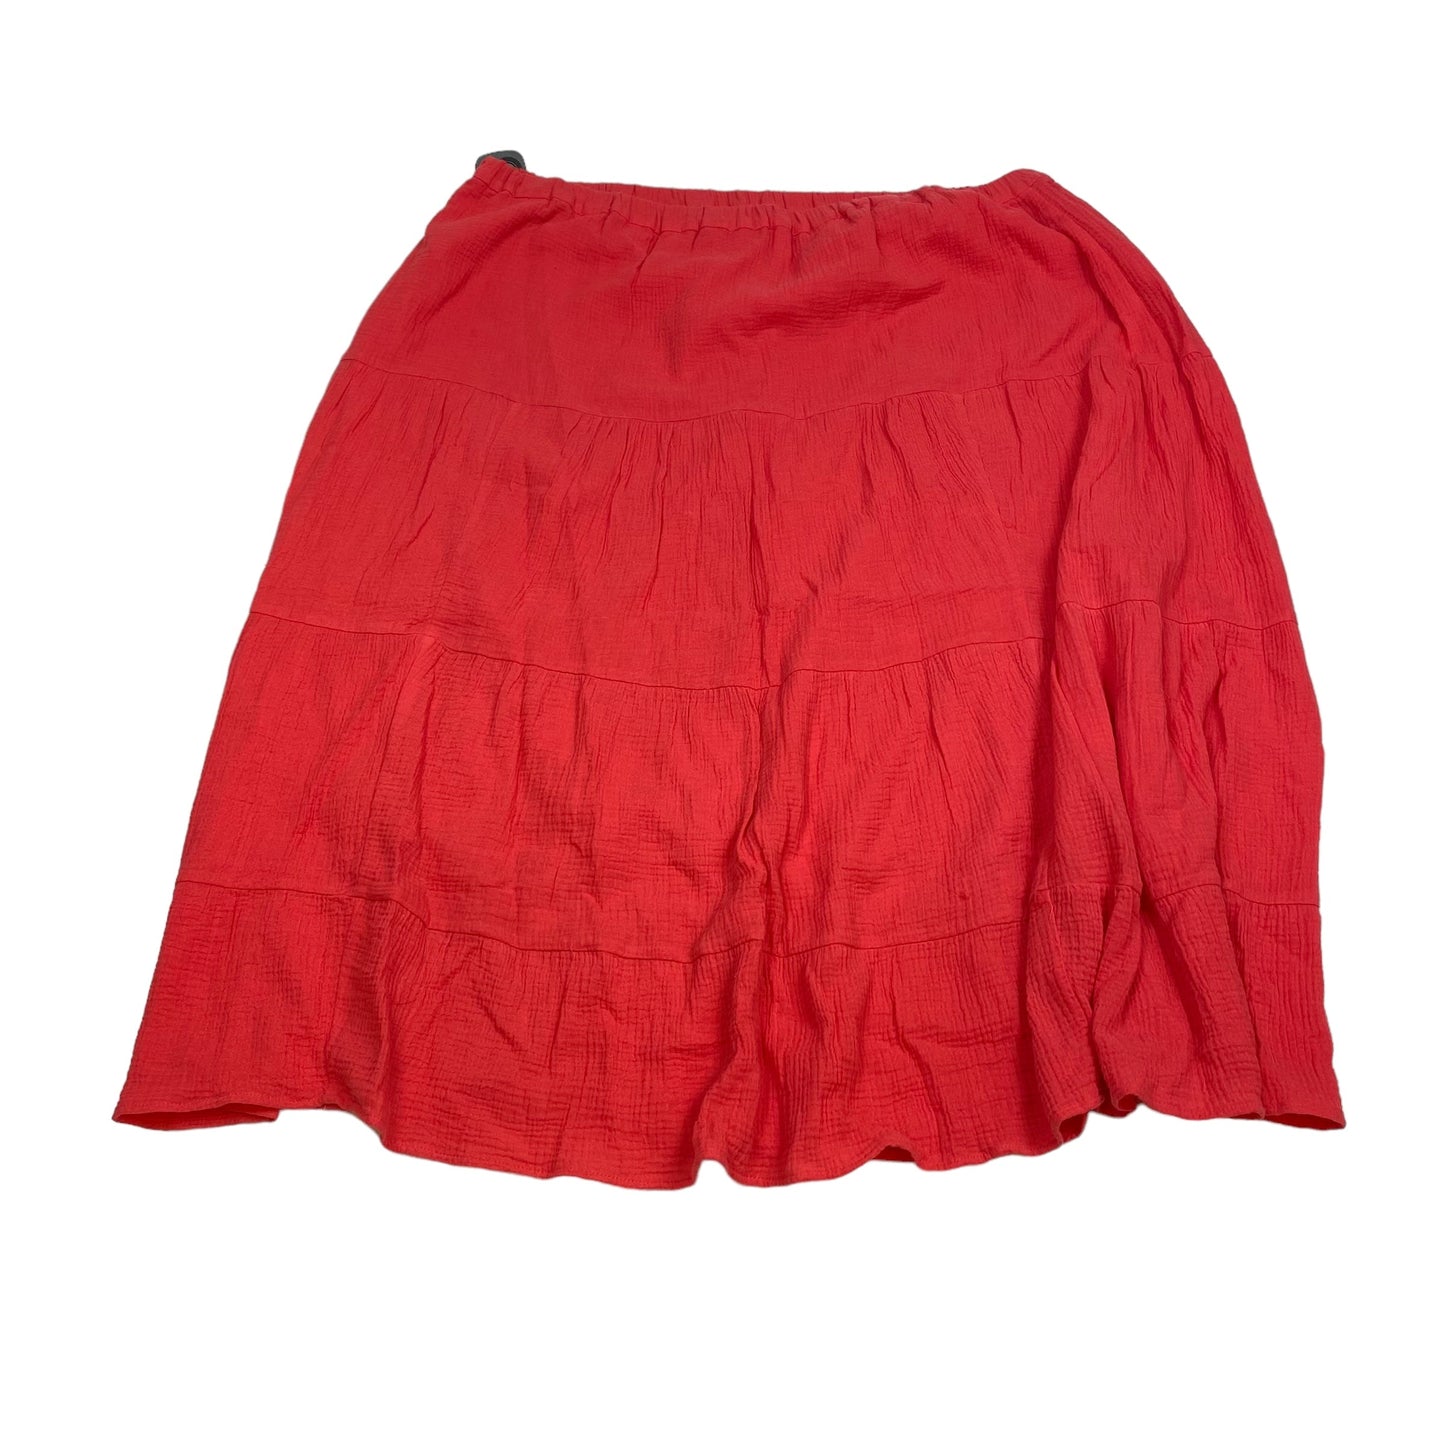 Red Skirt Midi Calvin Klein, Size 3x